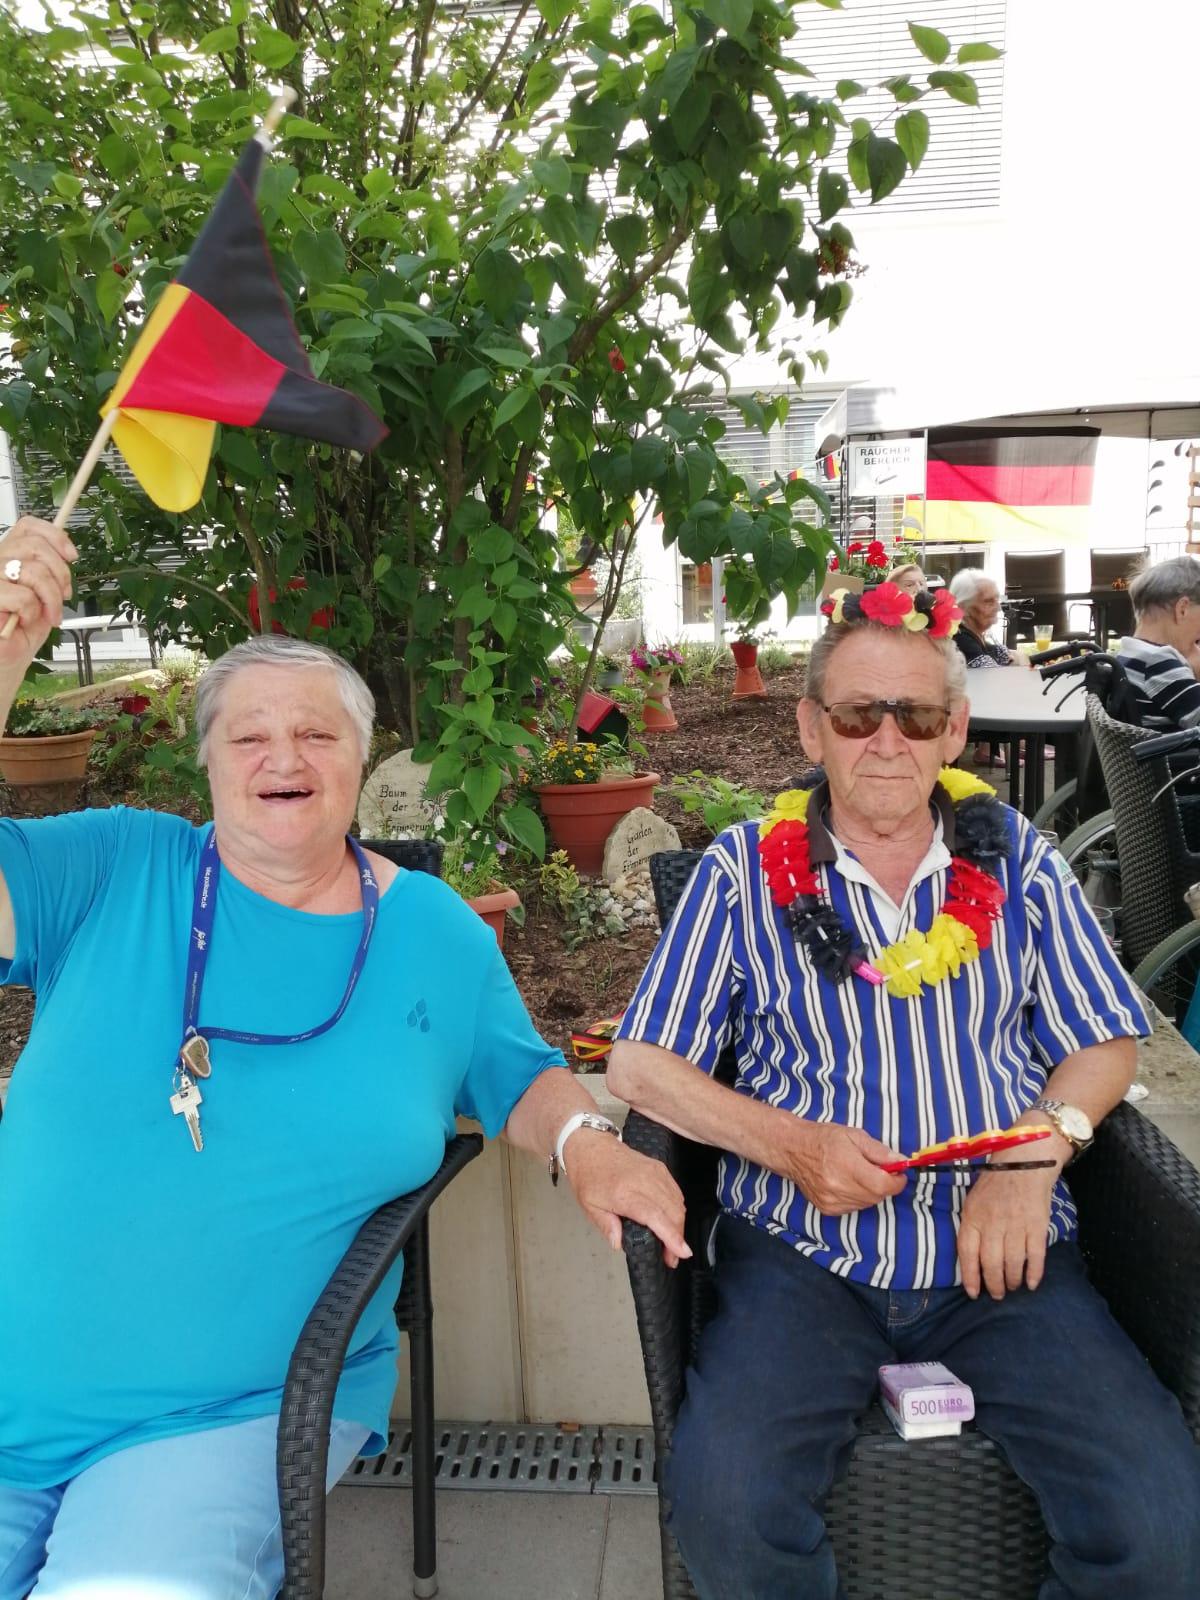 Bewohner jubeln mit Deutschland-Fahne beim EM-Schauen in der AGO Trier